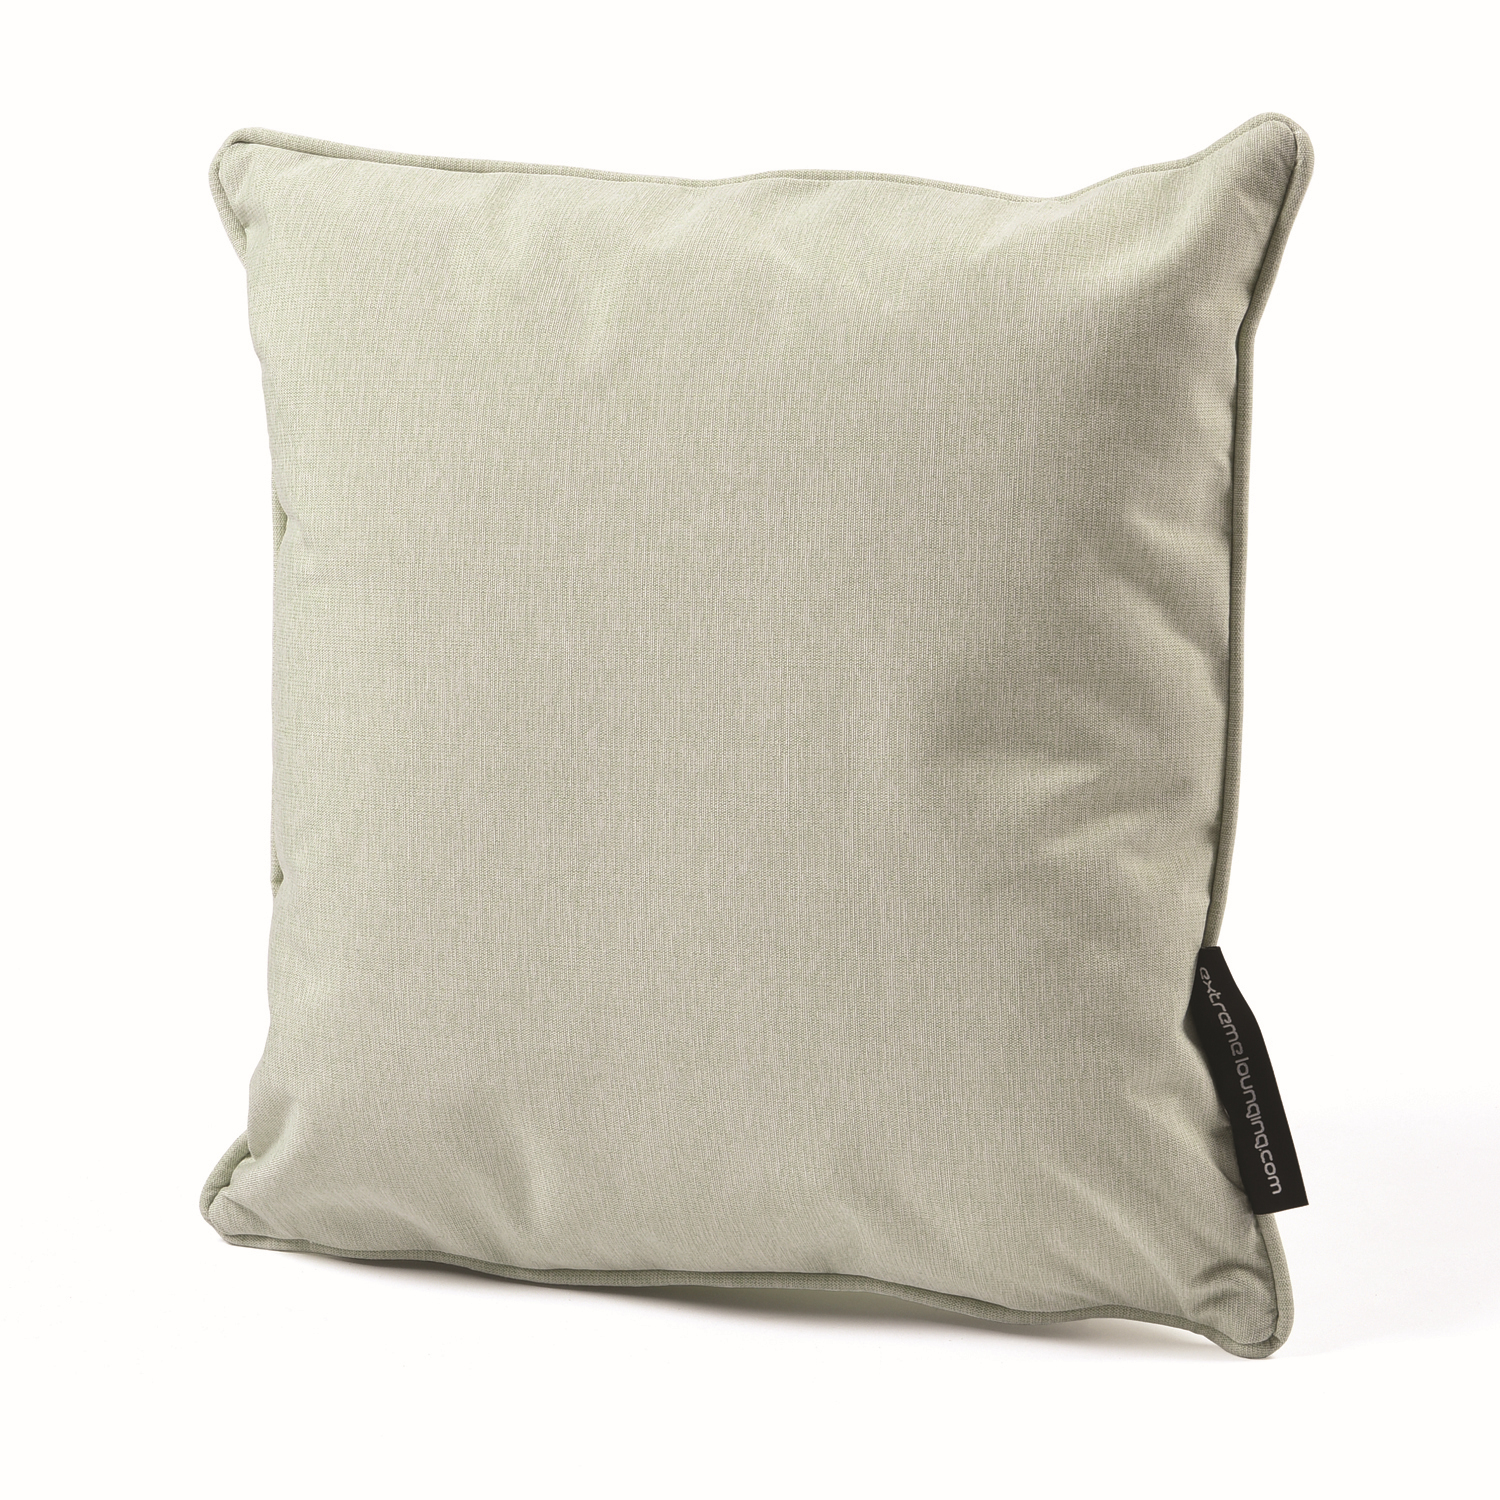 b-cushion extreme lounging Kissen Pastellgrün 40x40cm leicht wasserabweisend pflegeleicht UV-beständig